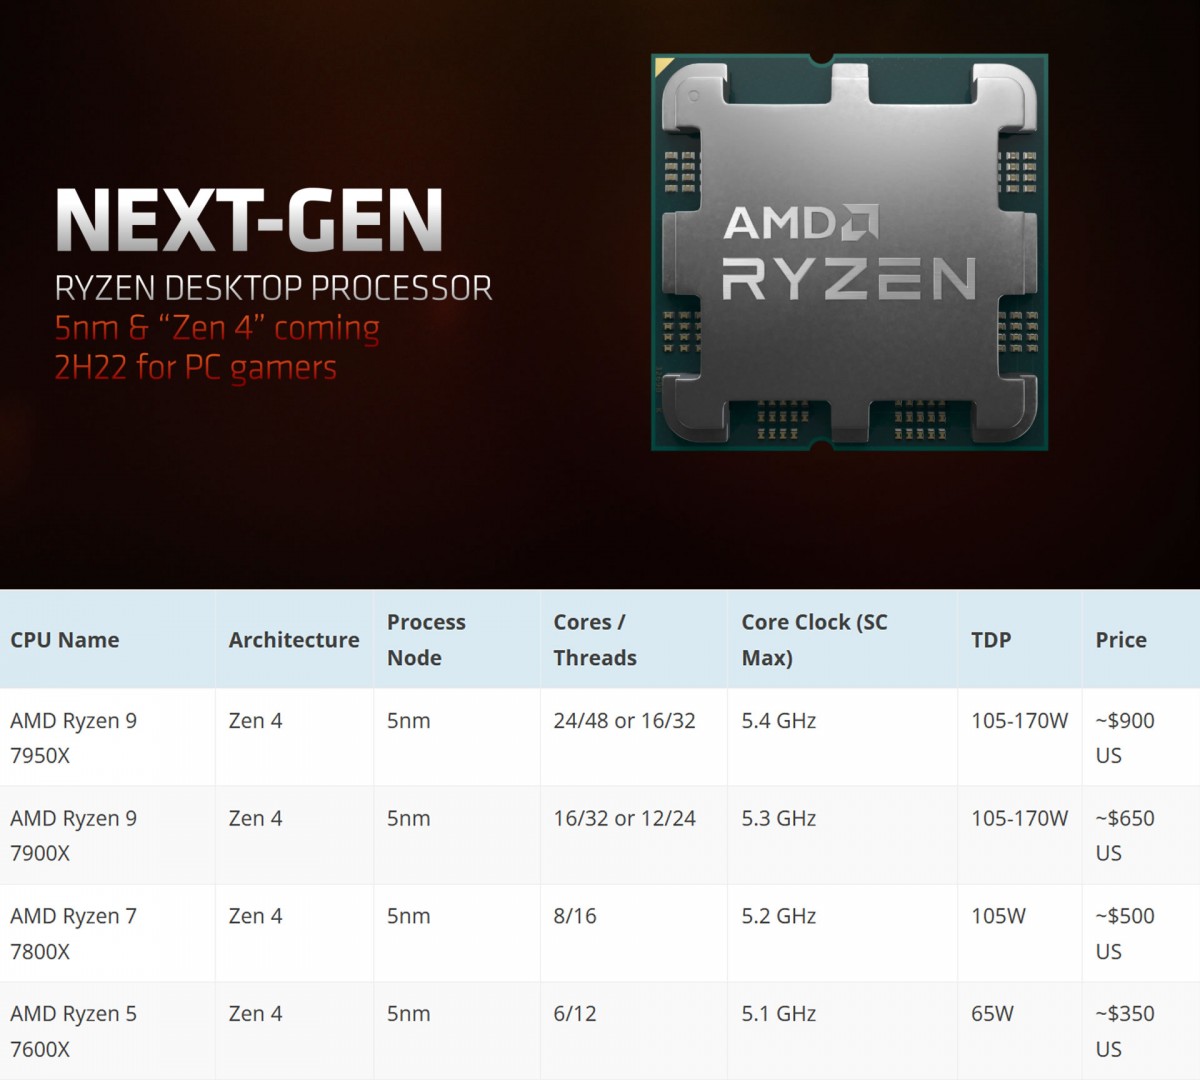 Voilà les premiers benchs pour le AMD Ryzen 7 7700X en 8 Cores et 16 Threads